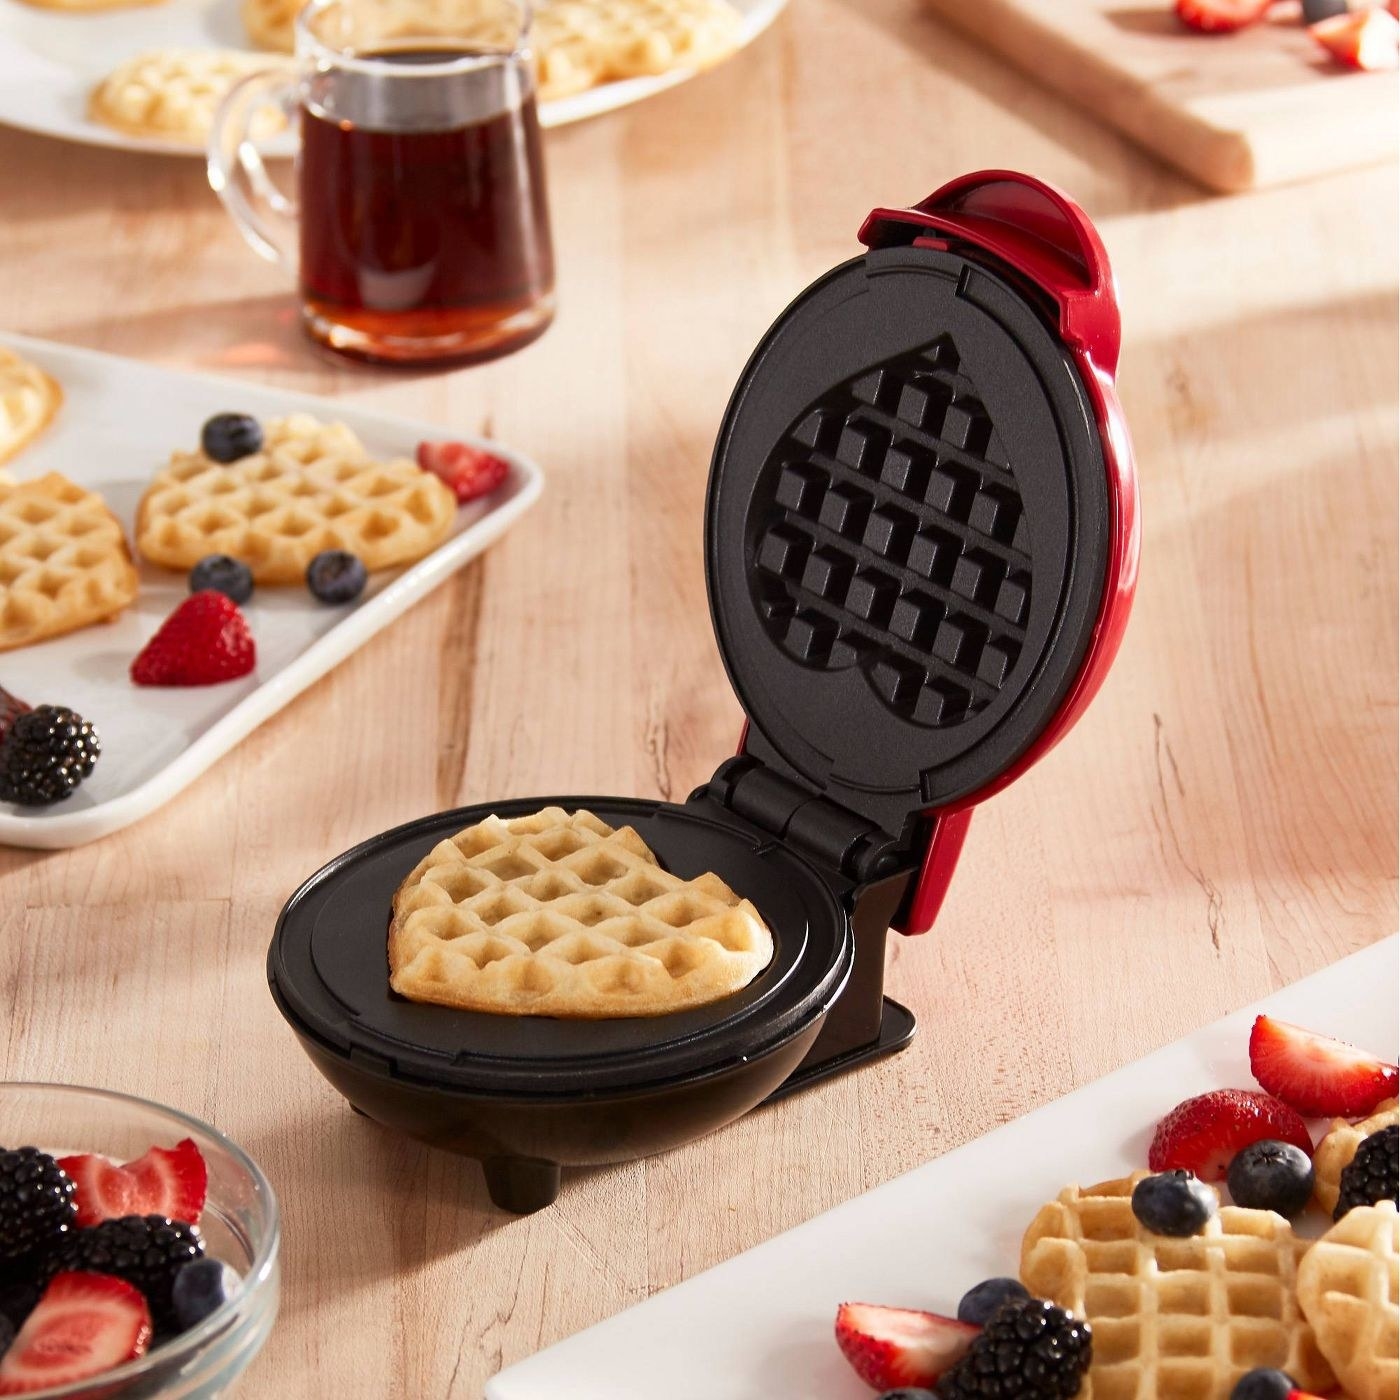 A mini heart shaped waffle maker